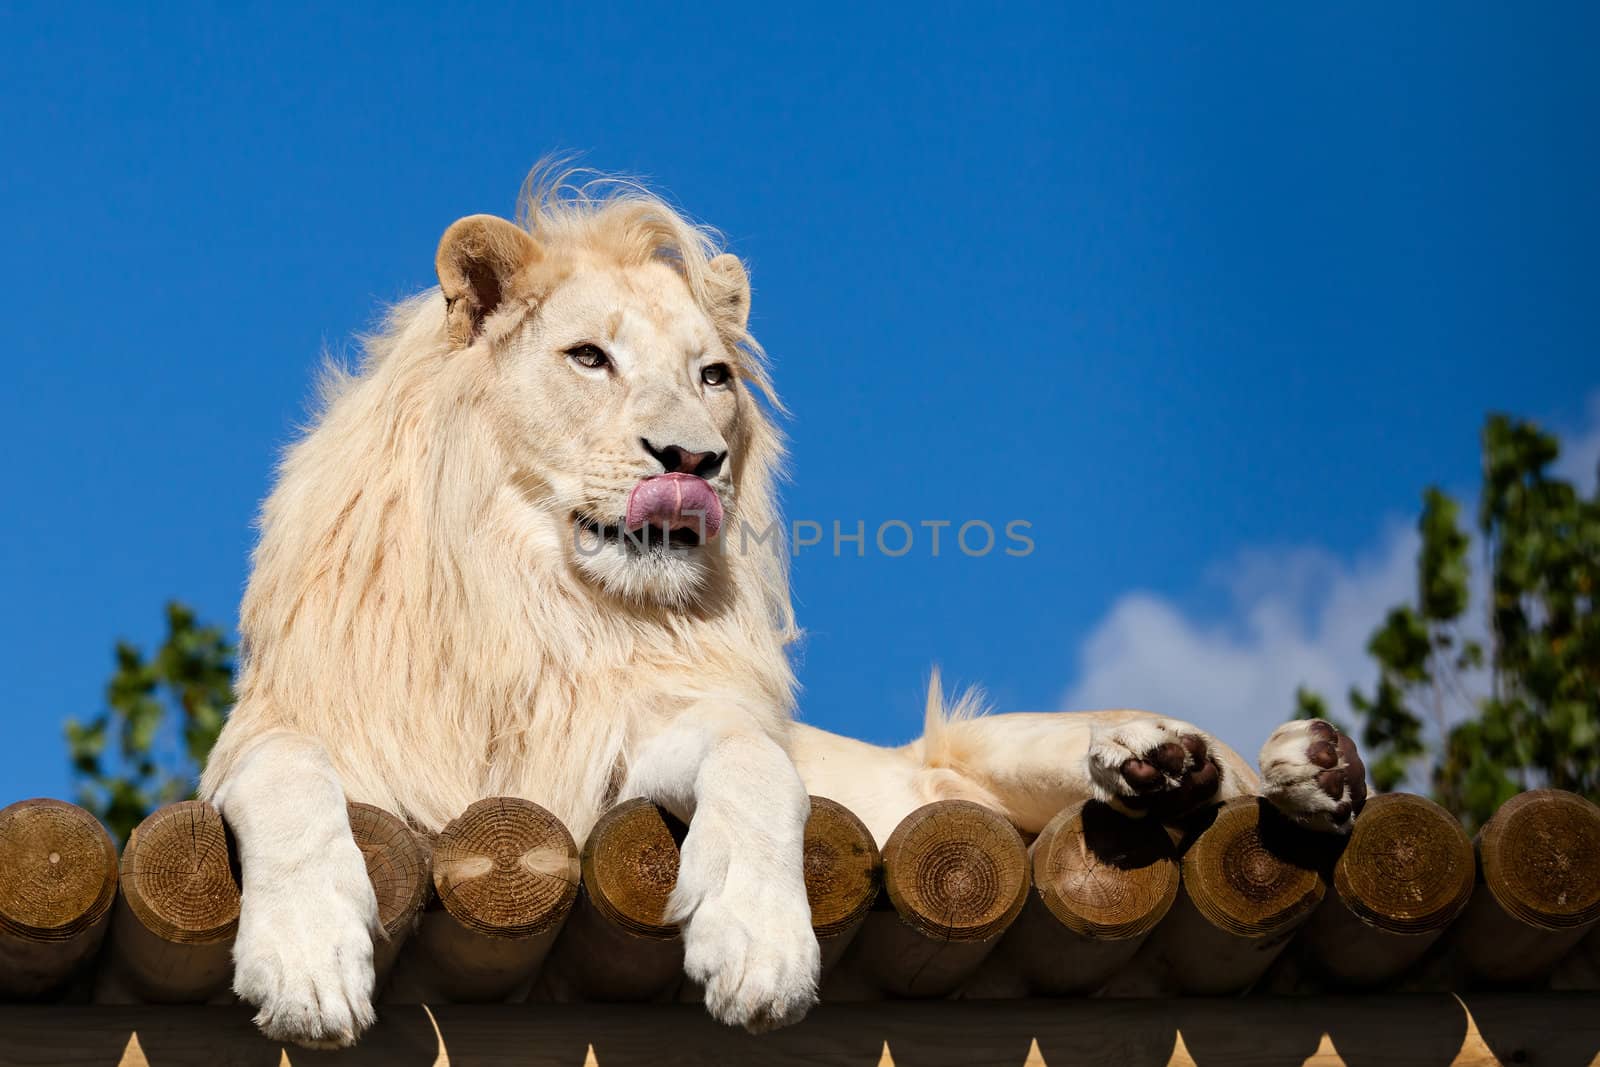 White Lion on Wooden Platform Licking Nose by scheriton